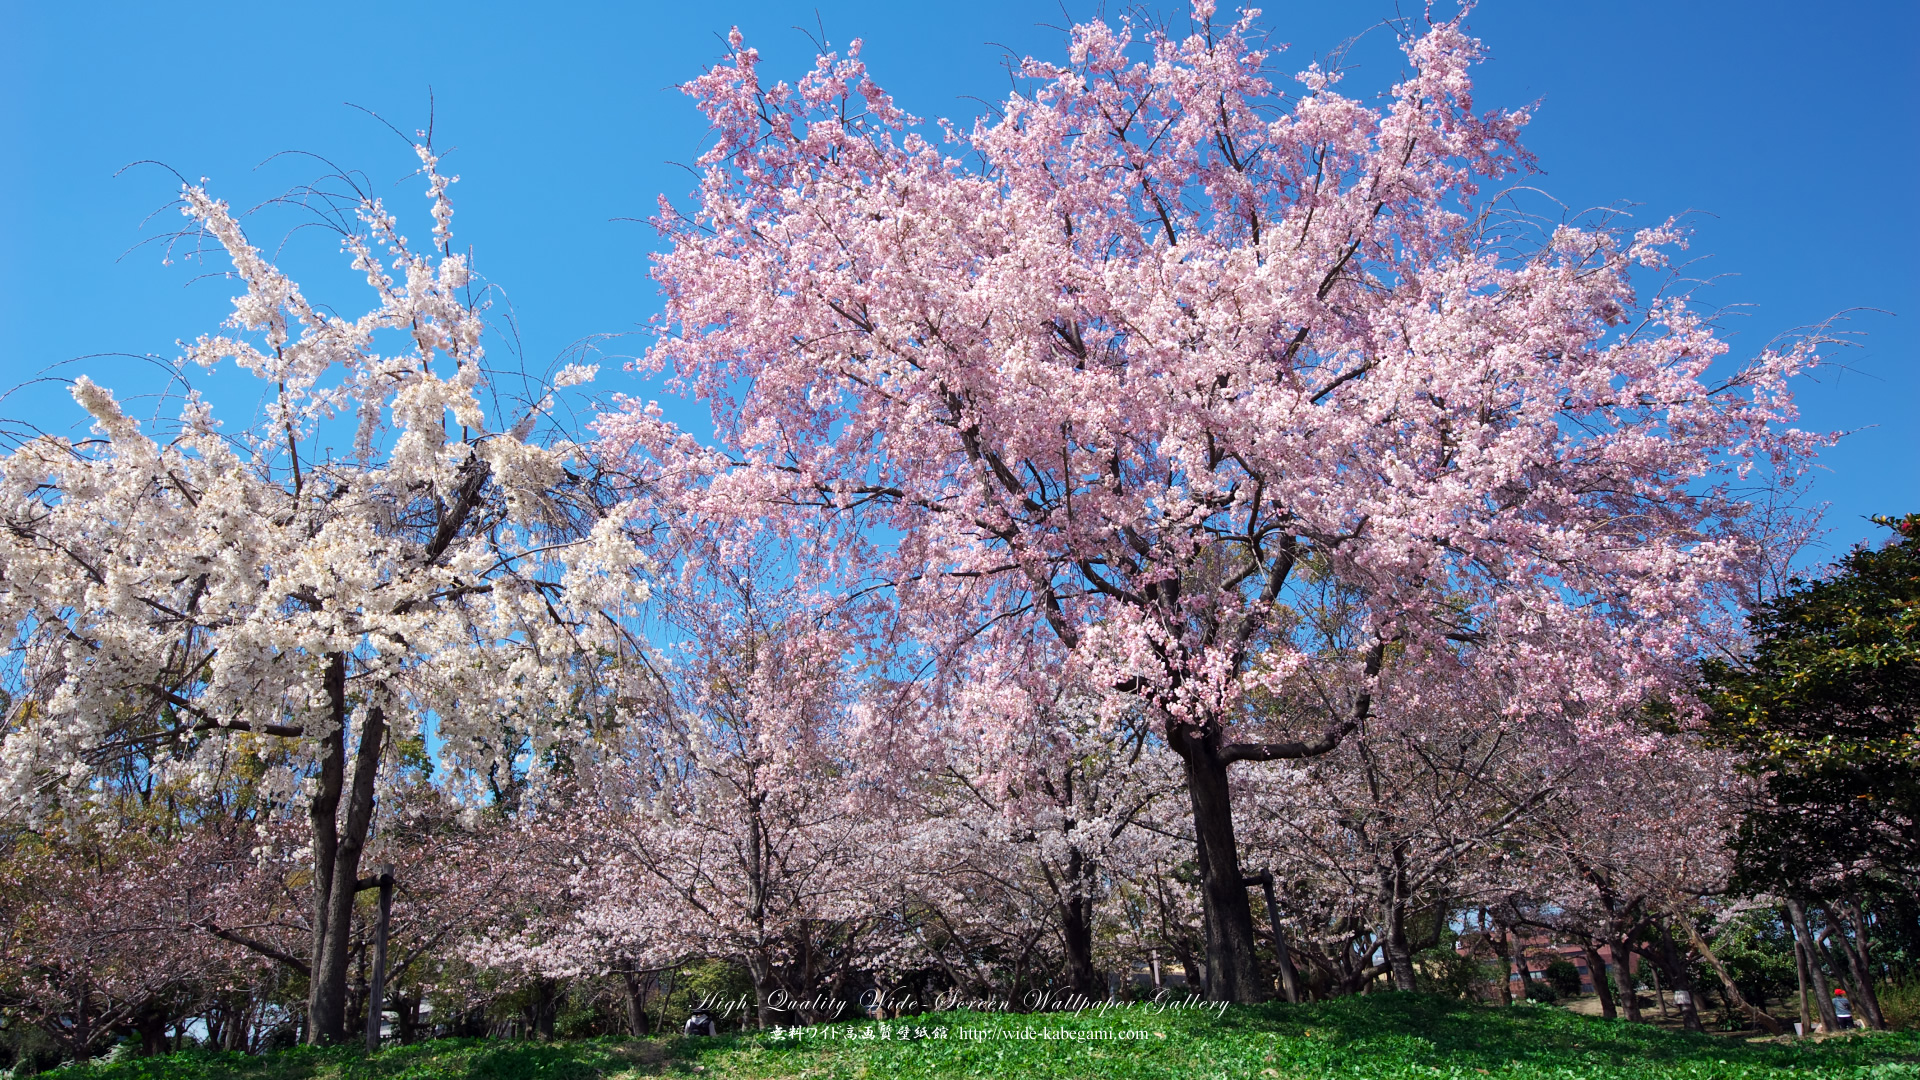 自然風景のワイド壁紙 1920x1080 大阪城の桜 3 無料ワイド高画質壁紙館